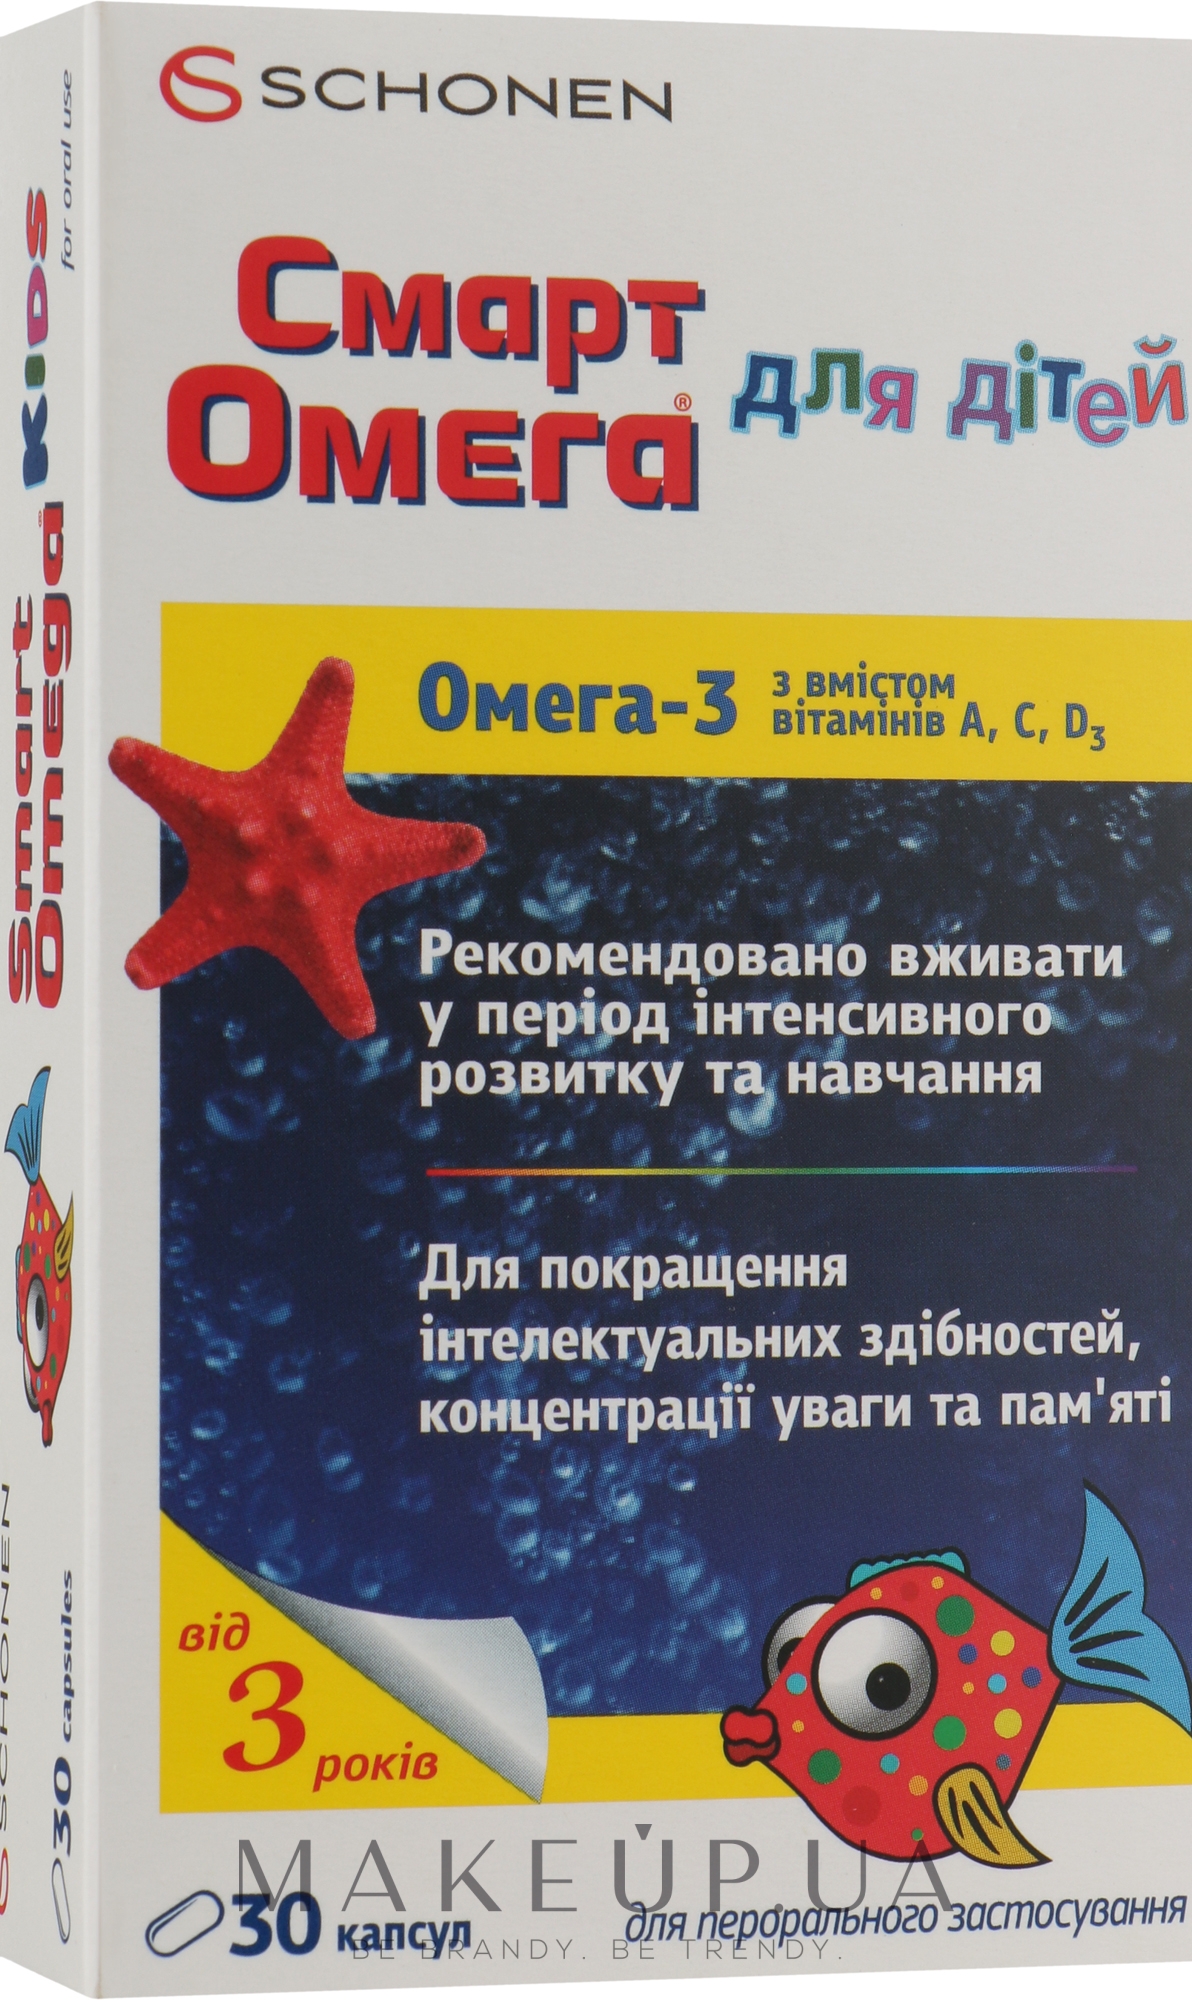 Капсулы для улучшения интеллектуальных способностей в период интенсивного развития «Смарт Омега для детей» - Schonen Smart Omega — фото 30шт